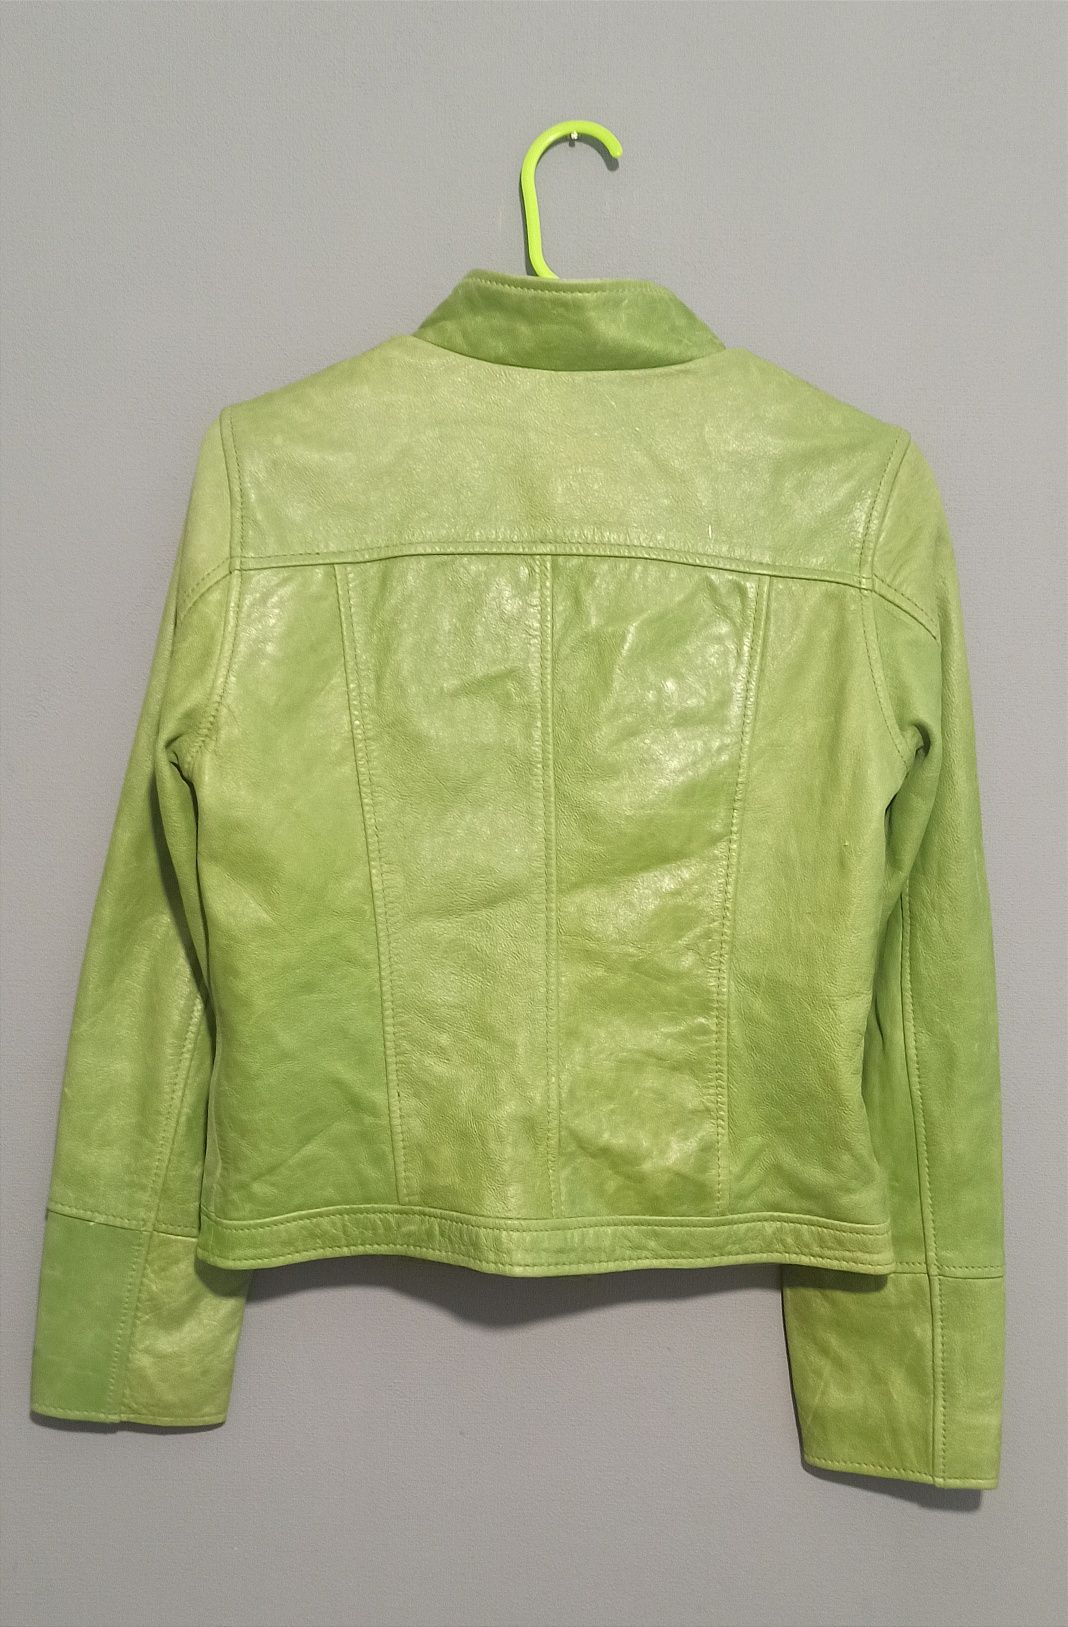 Яскрава шкіряна куртка

колір весняної соковитої зелені

вона неймовір